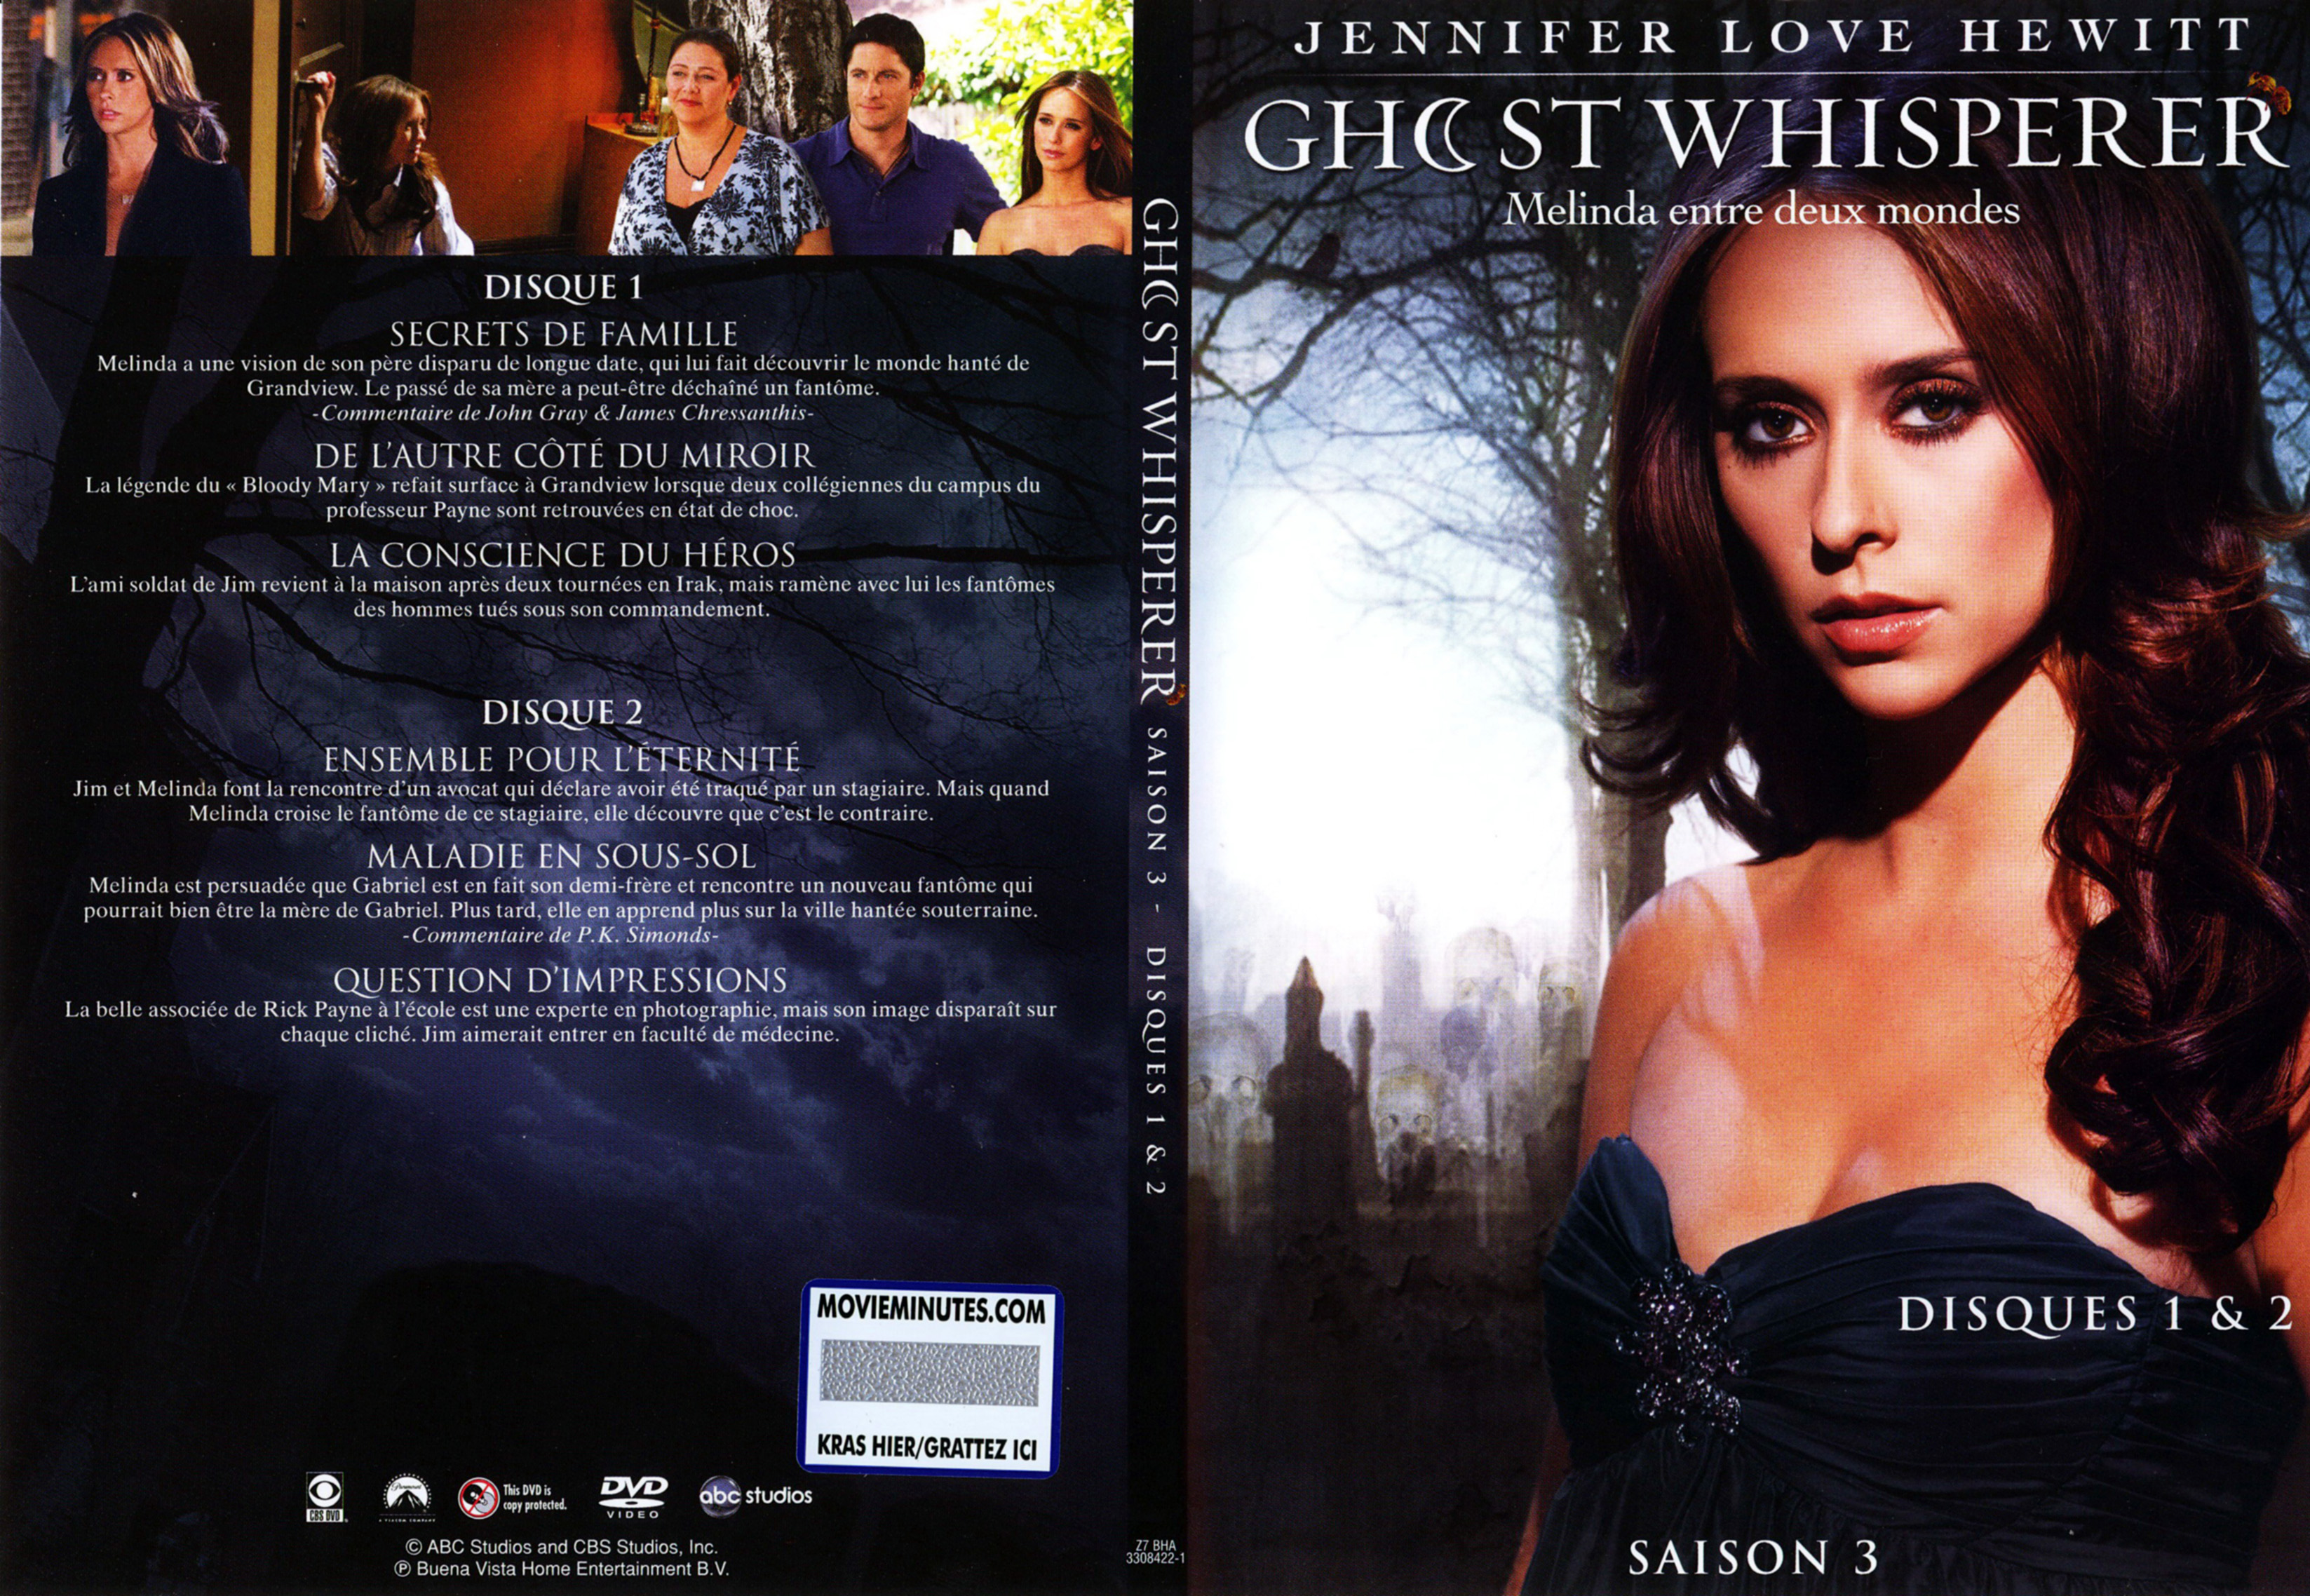 Jaquette DVD Ghost whisperer Saison 3 DVD 1